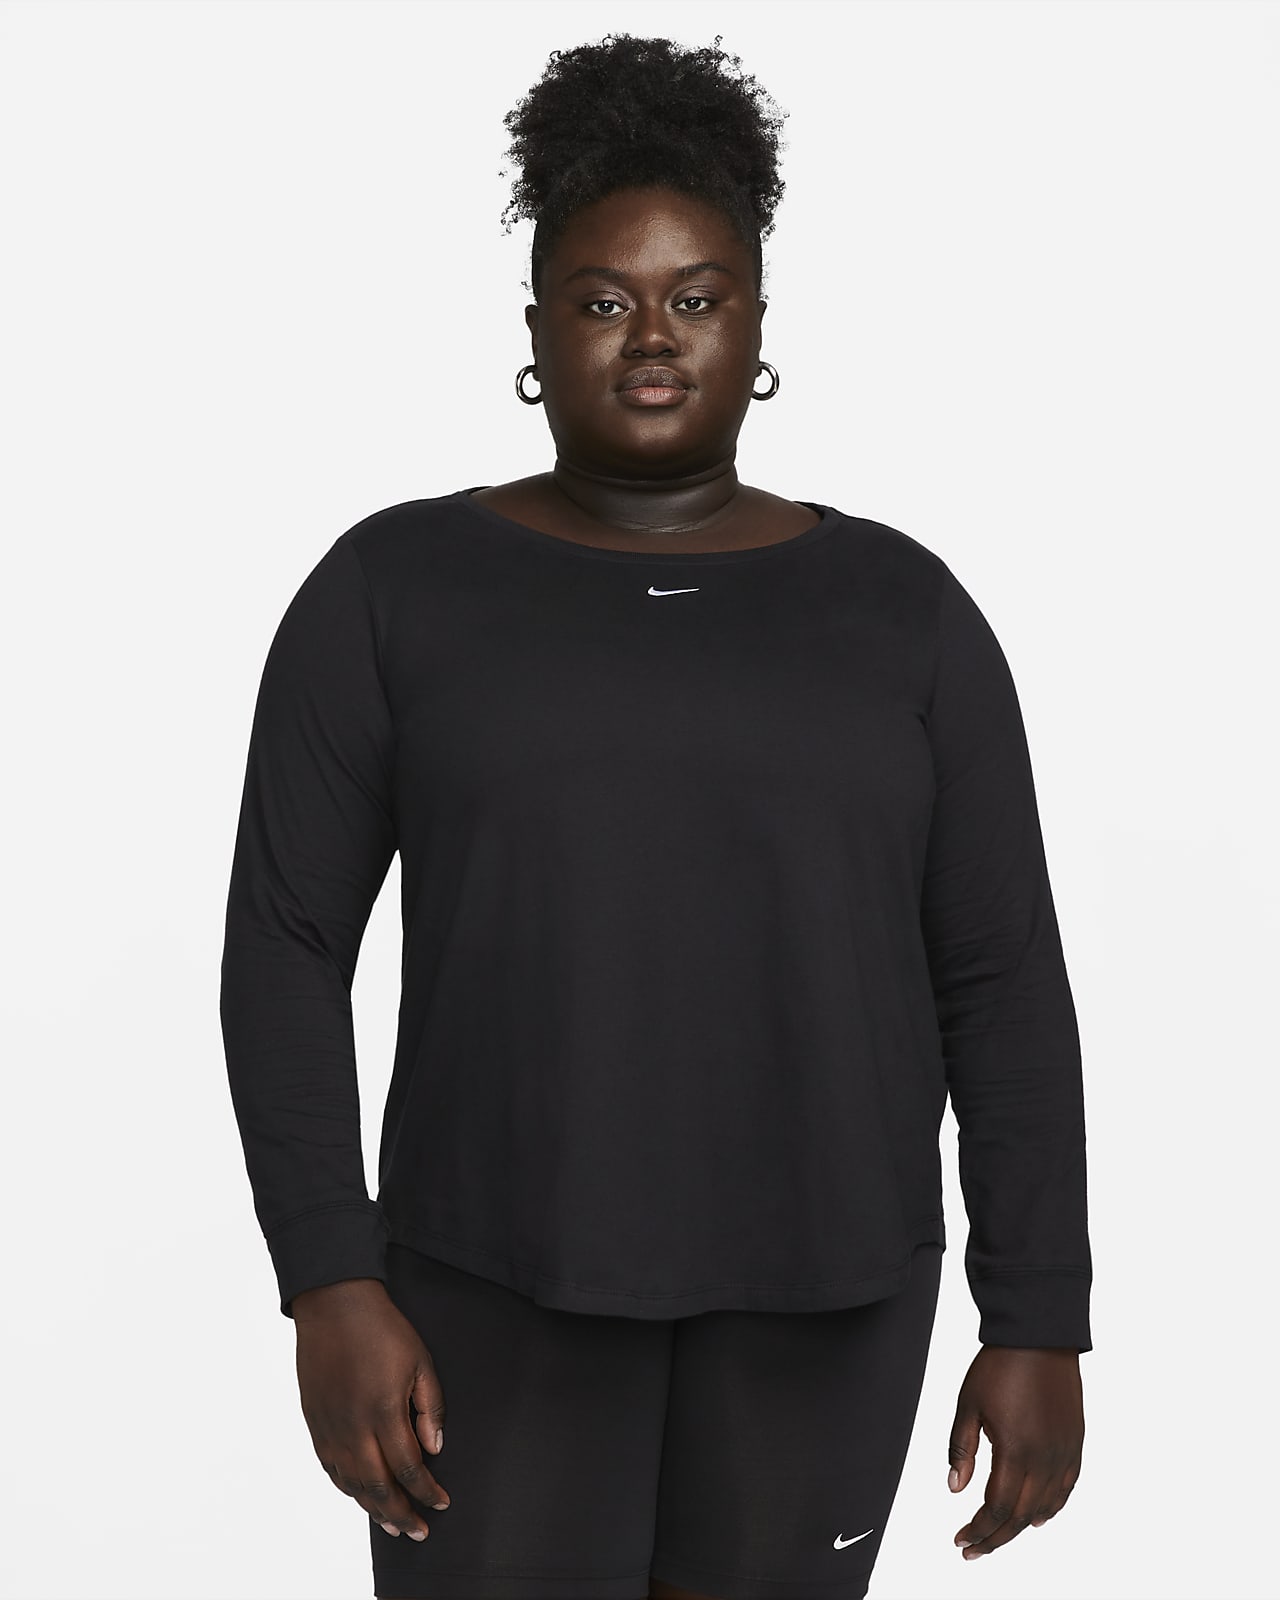 Camiseta manga larga mujer Zero negro